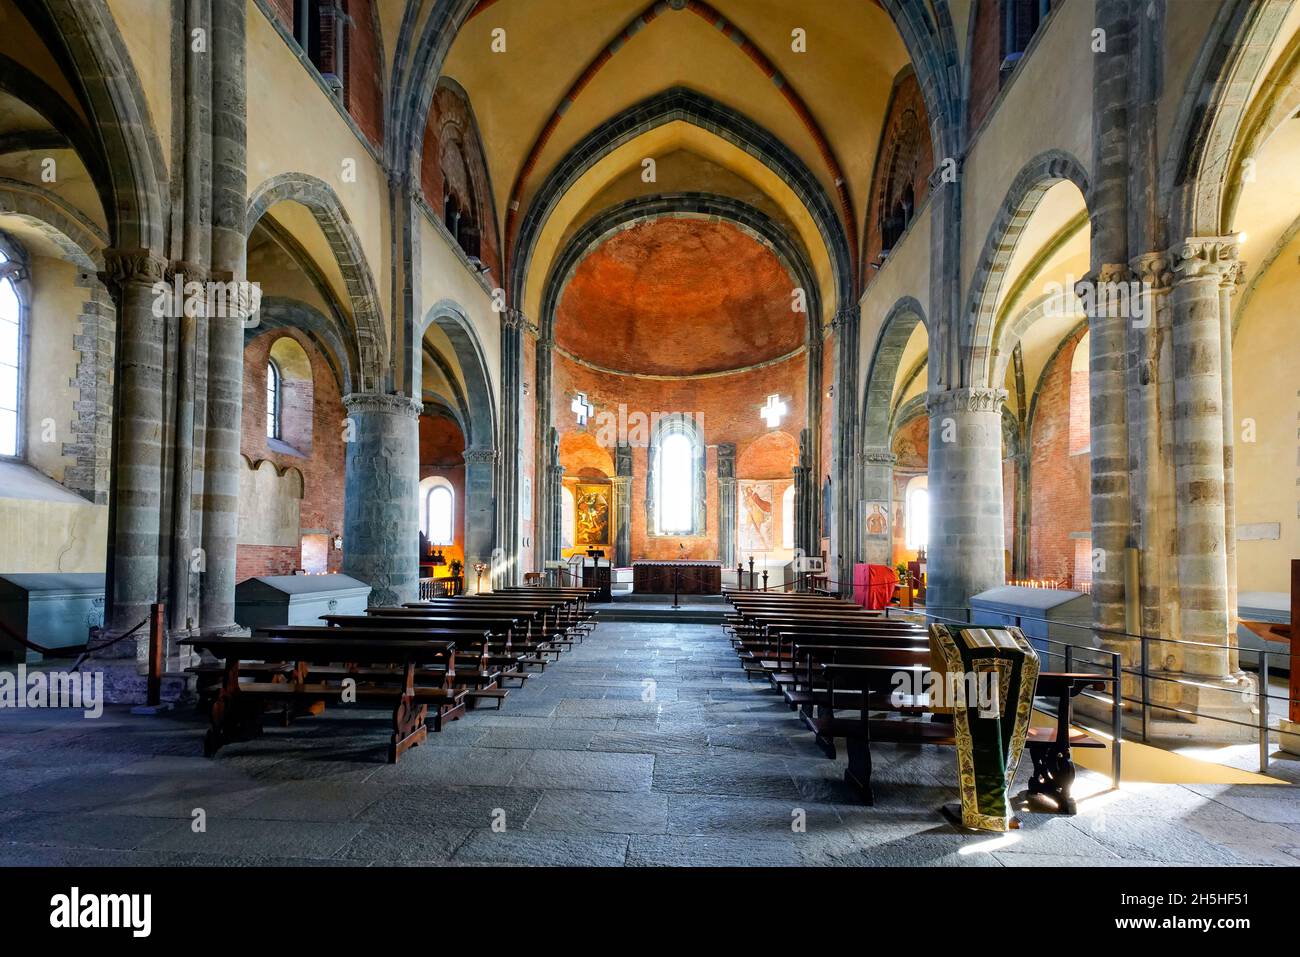 Interior of the Church of San Michele church di Torino (Sacra Di San Michele), Sant'Ambrogio di Torino, Piedmont, Italy. The three aisles inside the C Stock Photo